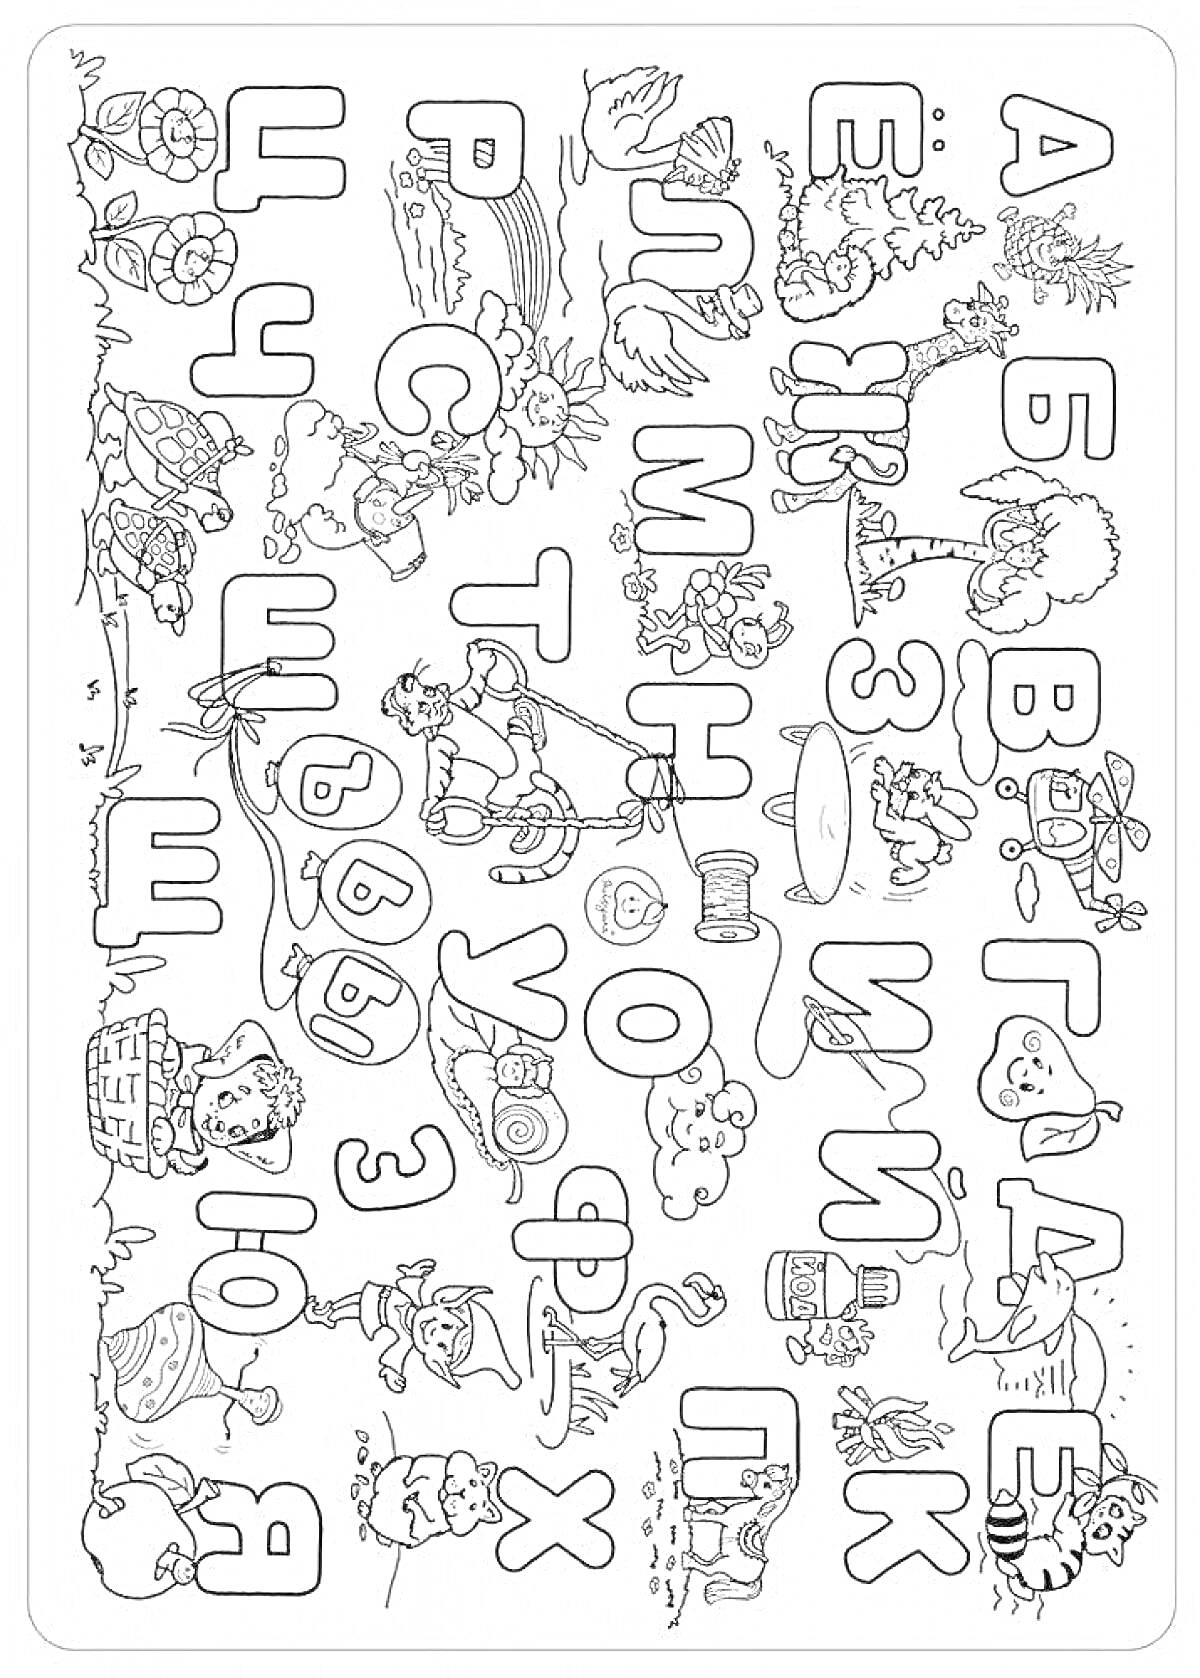 Раскраска Алфавит с изображениями фруктов, животных, людей и различных предметов